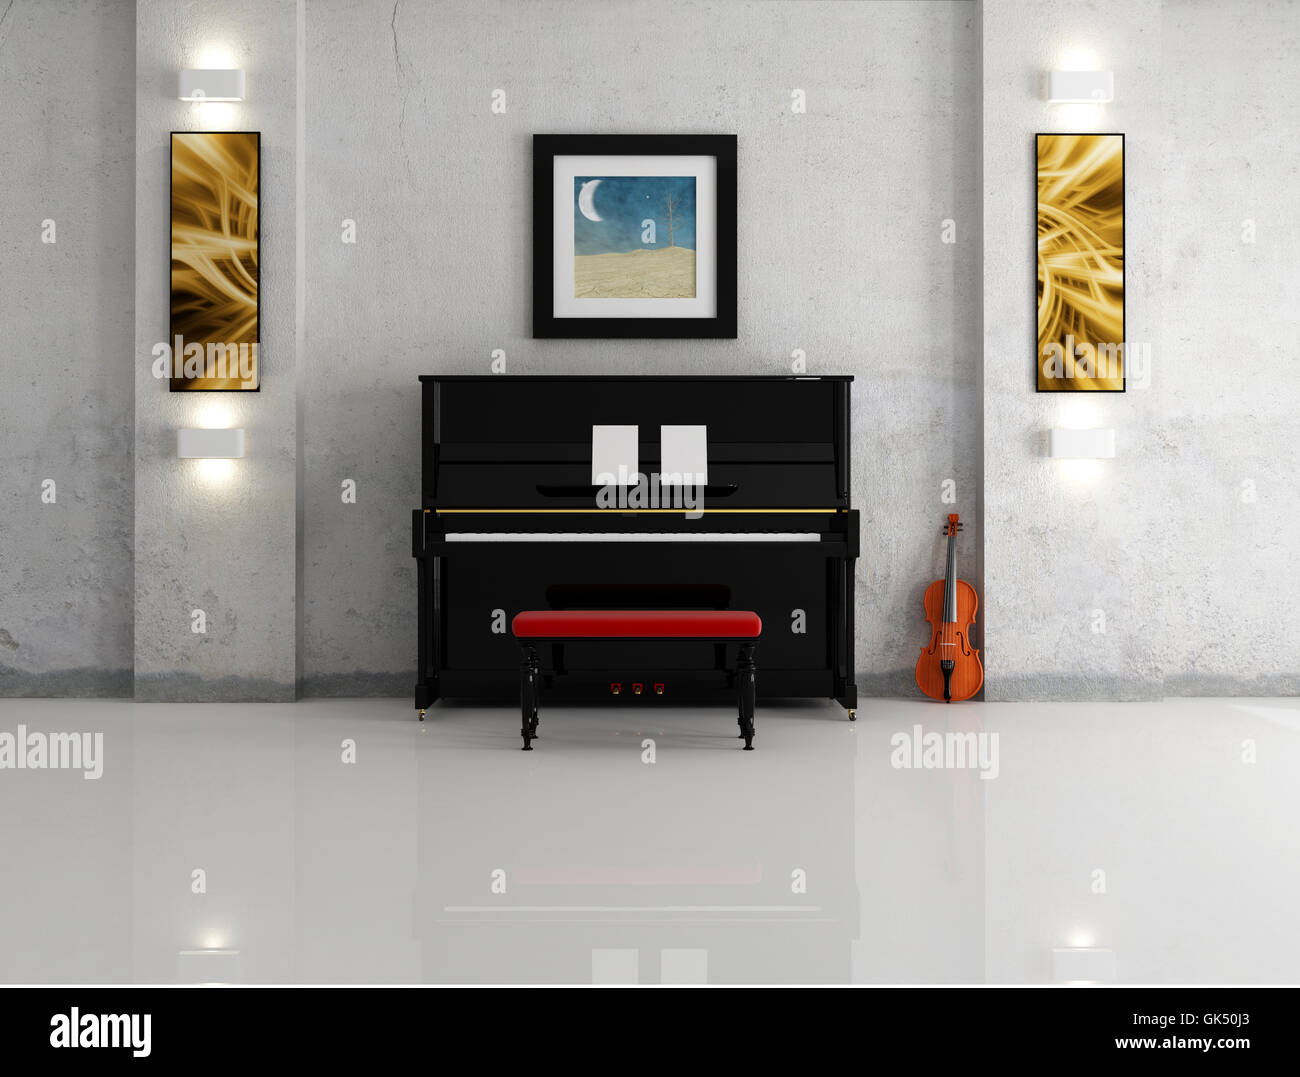 interior wall piano Stock Photo